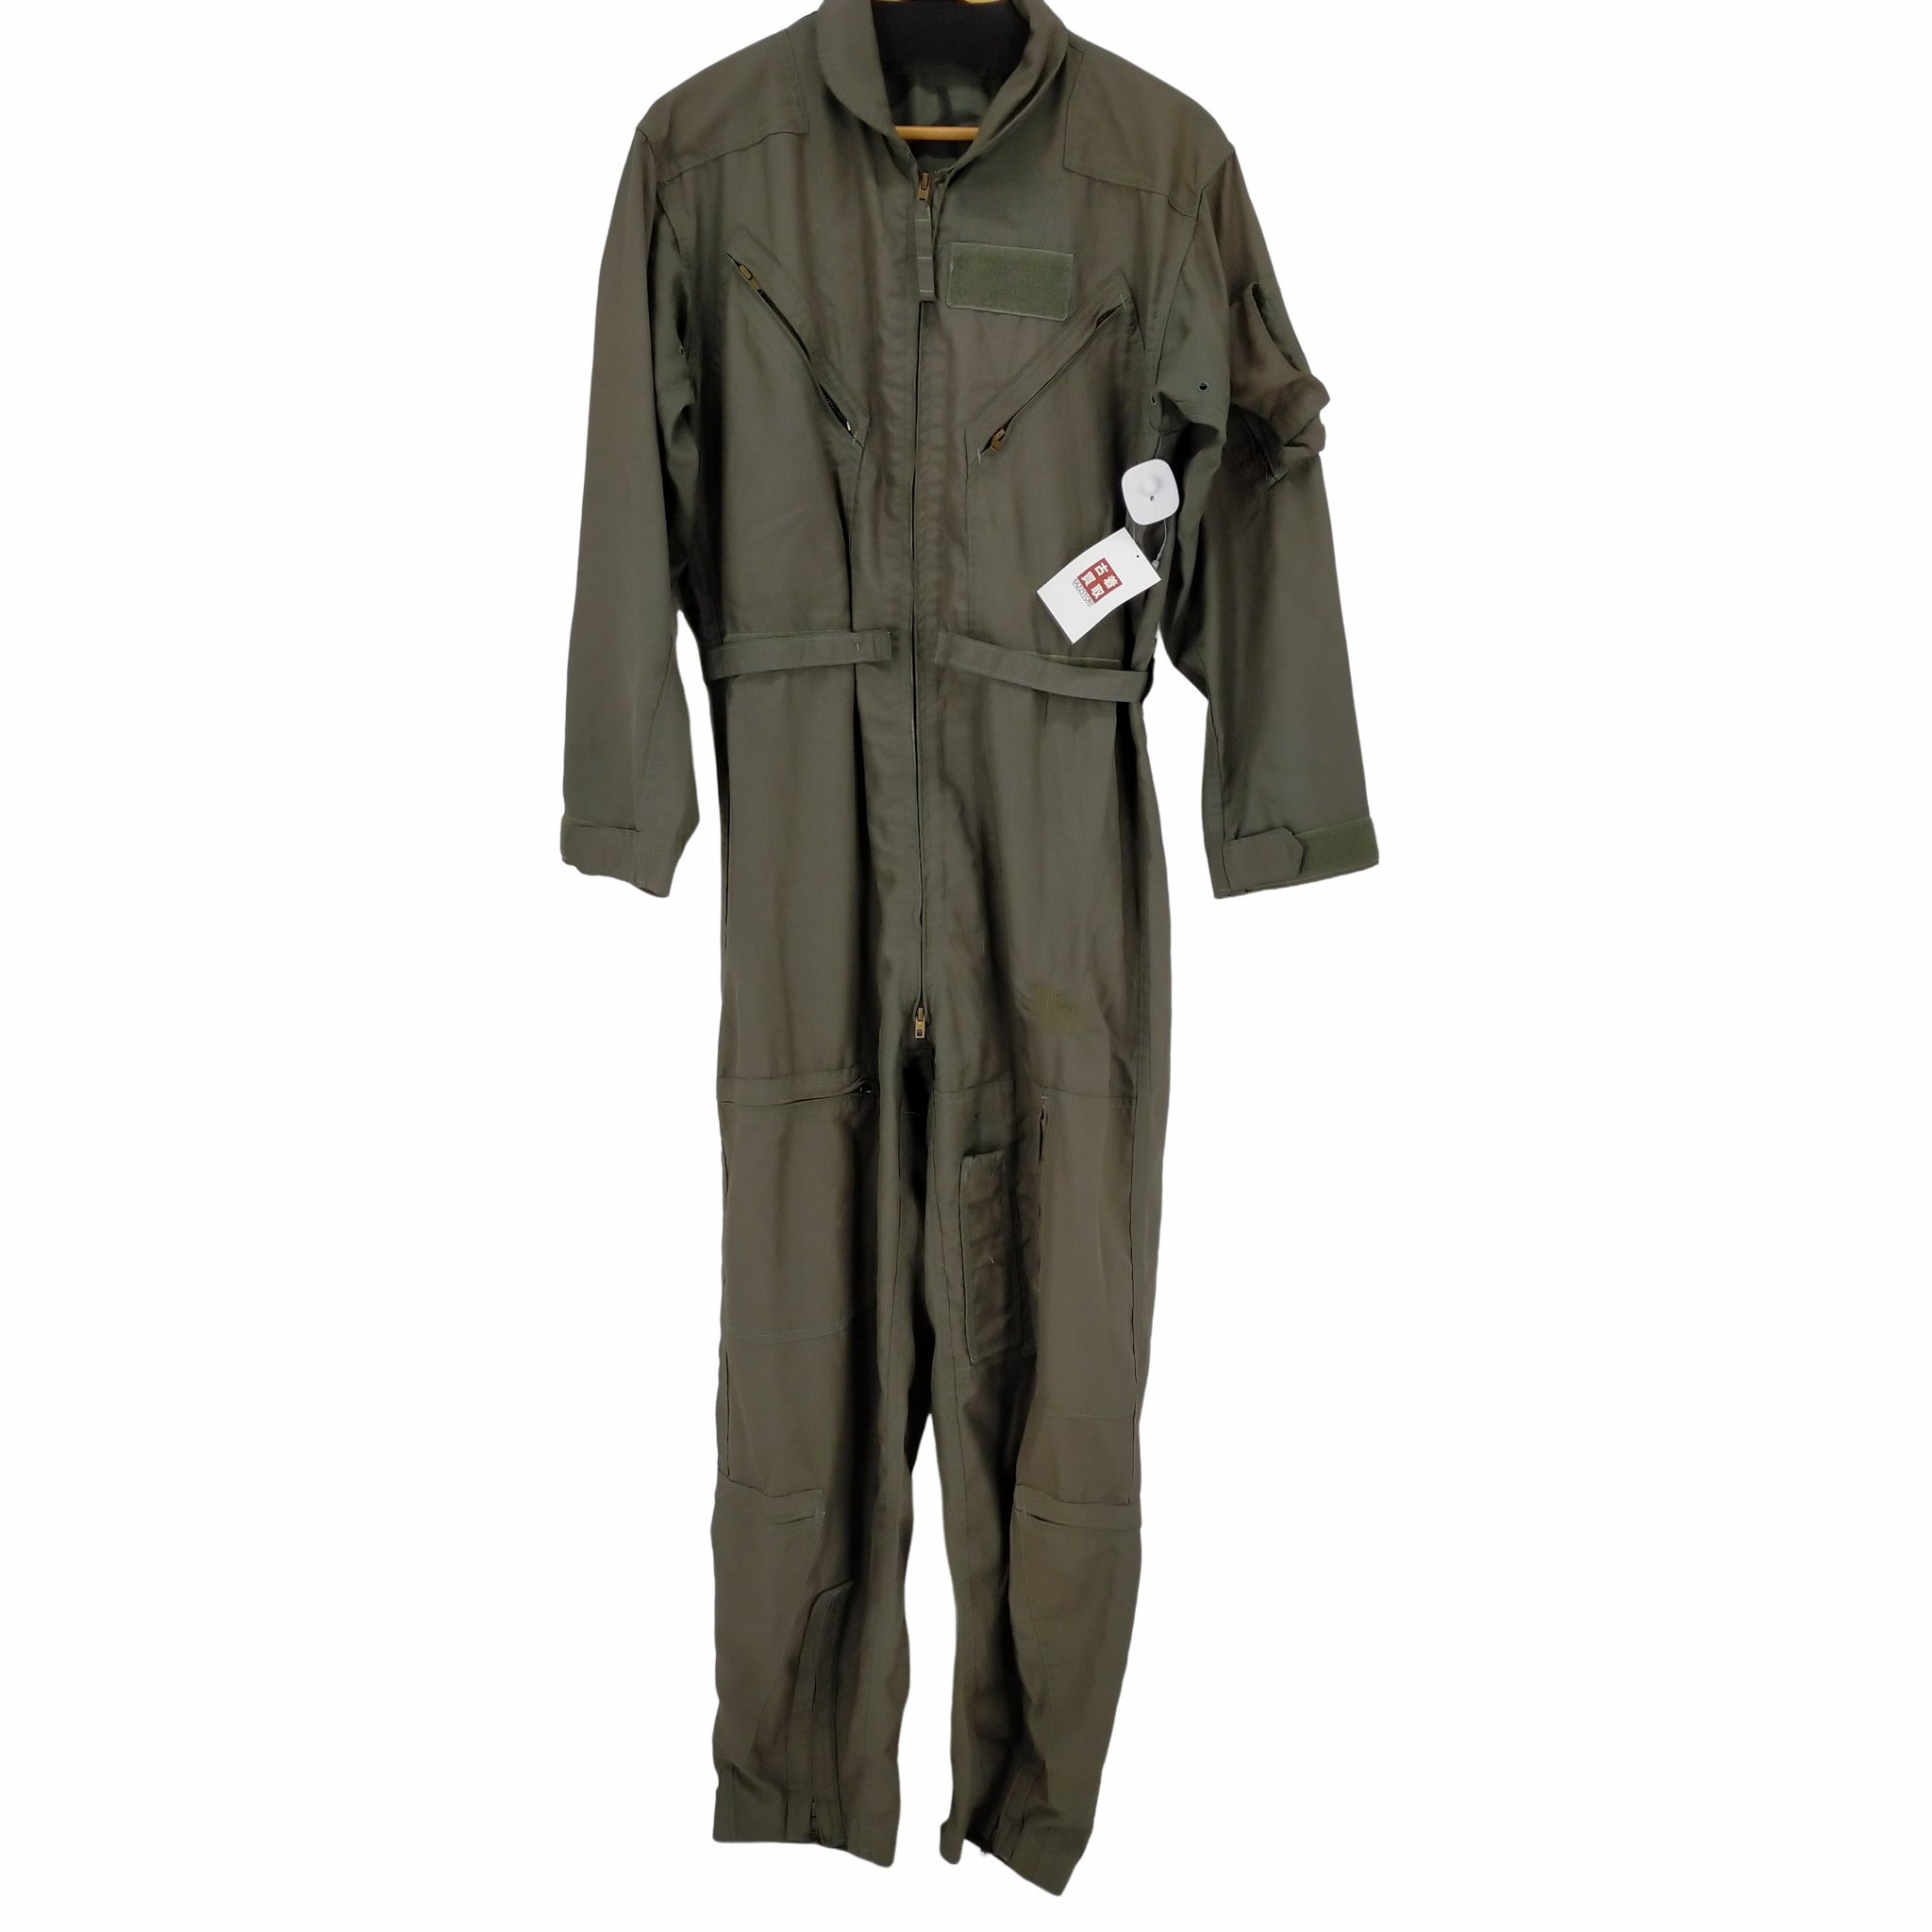 US ARMY(ユーエスアーミー)70S SCOVILLジップ フライトスーツ ジャンプスーツ つなぎ